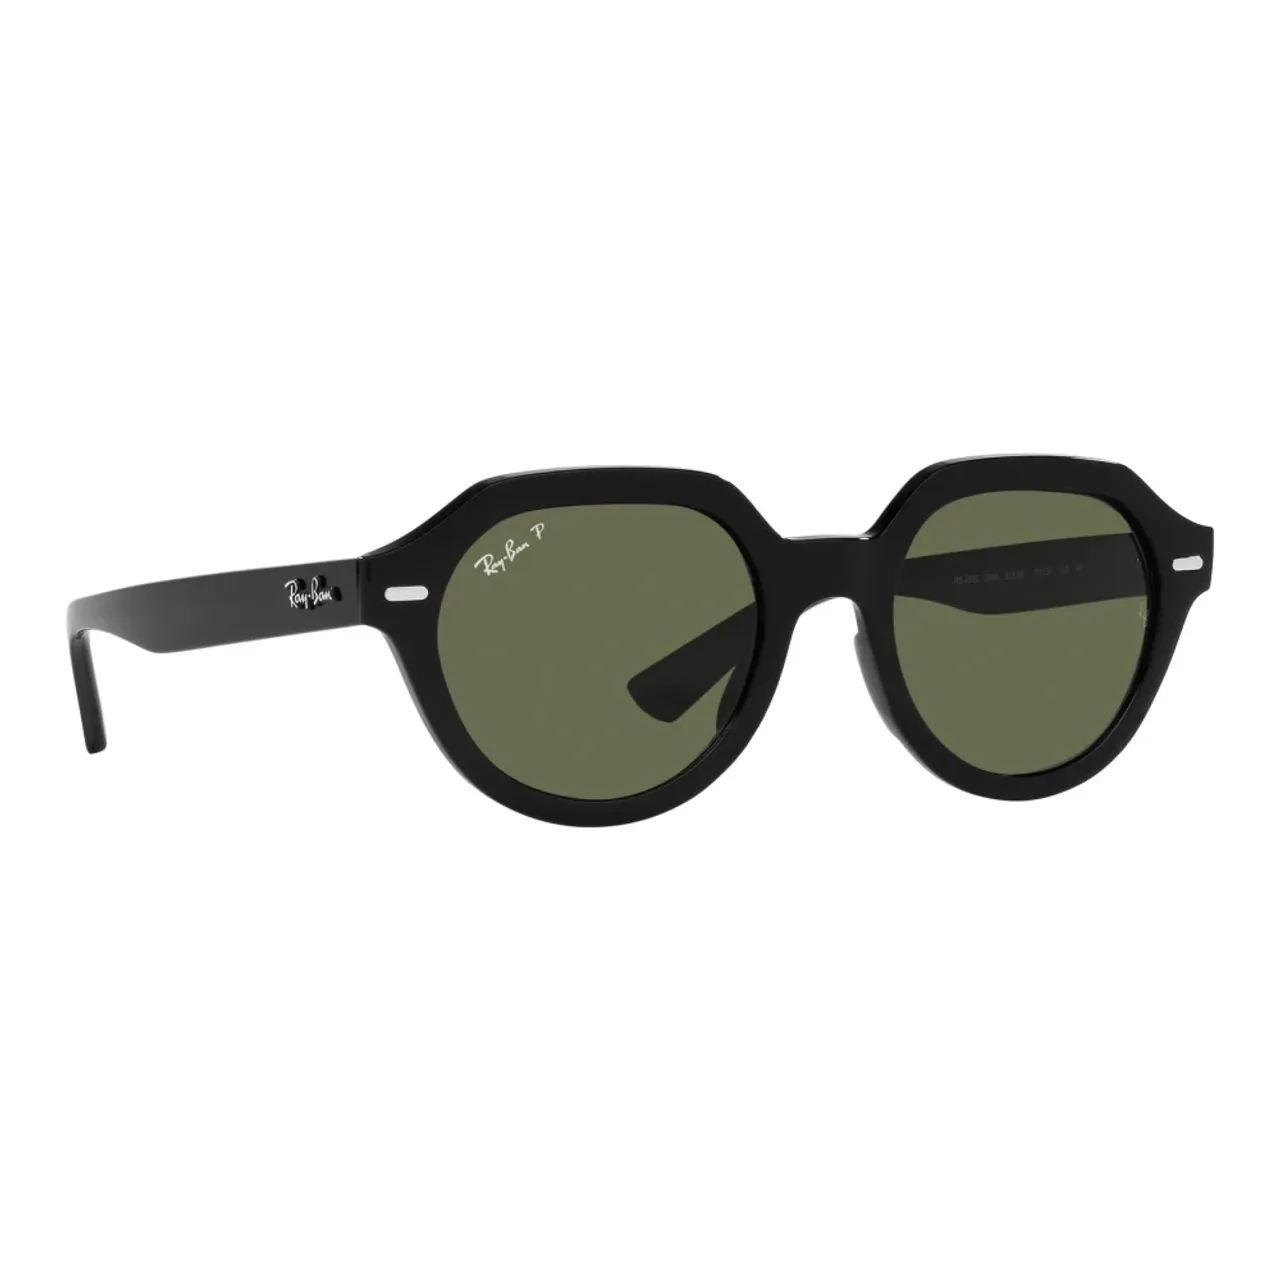 Ray-Ban , RB Gina 4399 901-58 53 Polarized Sunglasses ,Black female, Sizes: